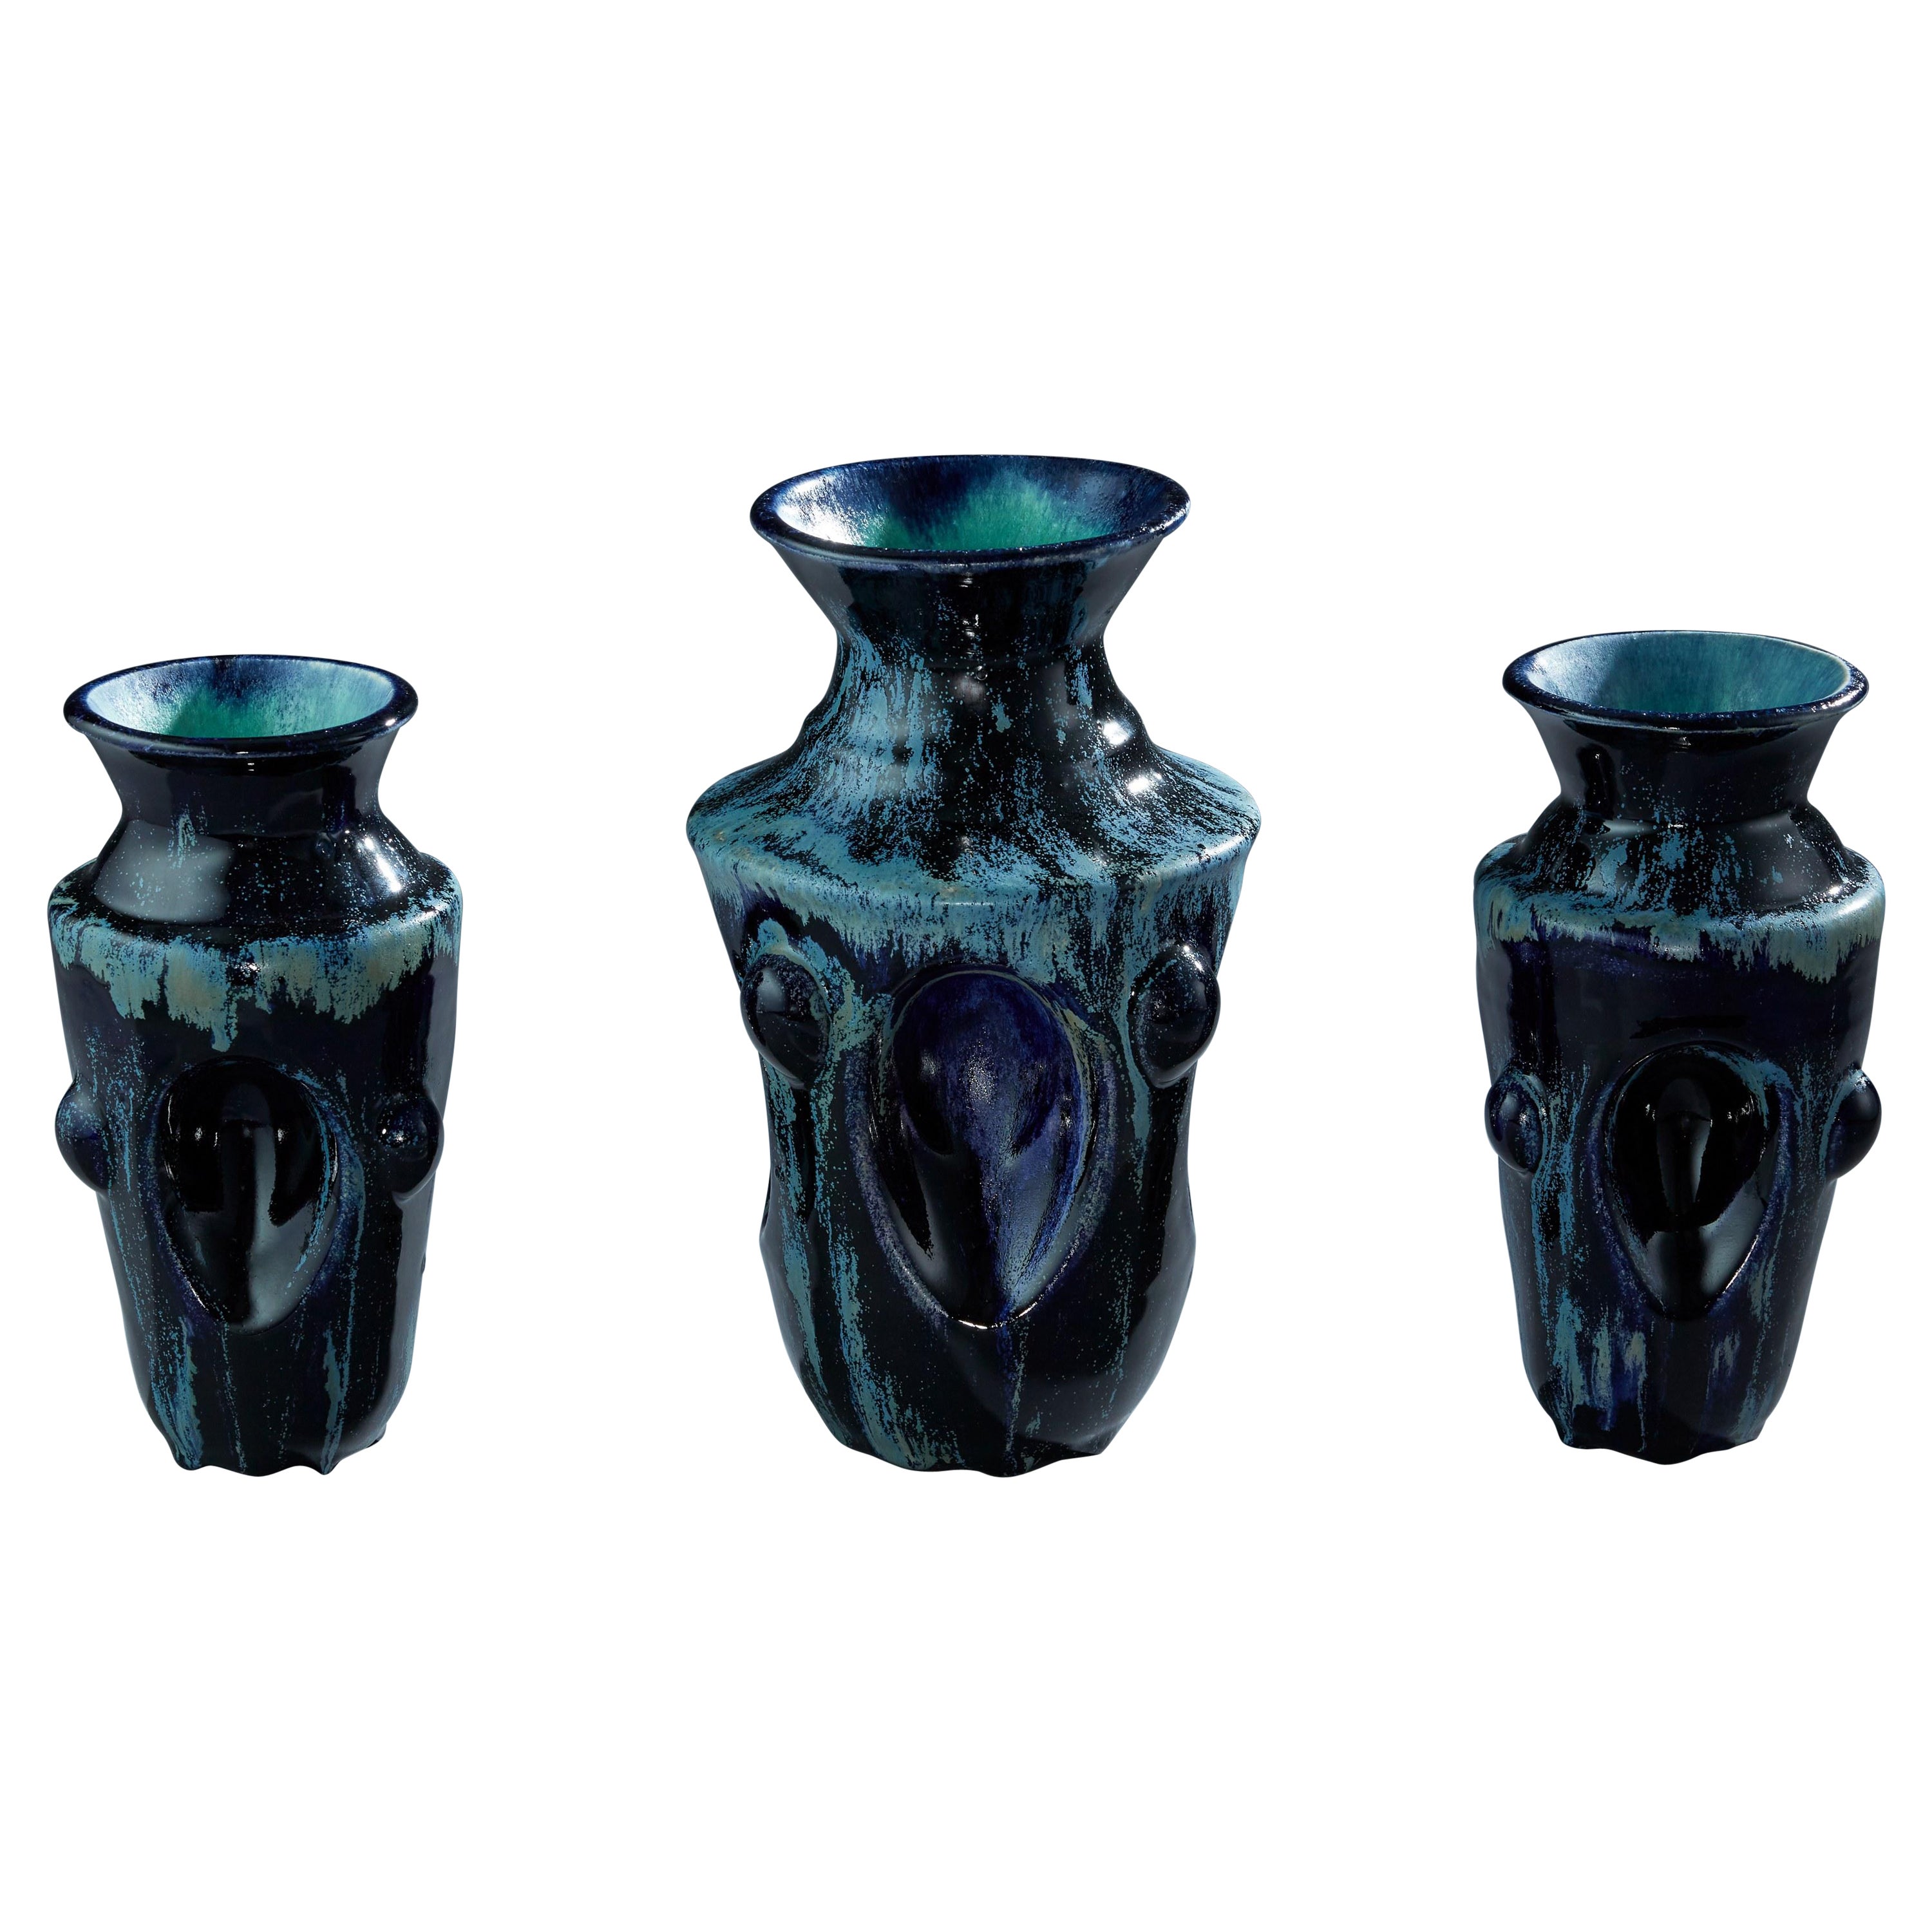 Garniture de trois vases bleu profond - Contemporain - 21e siècle - Italian Unique